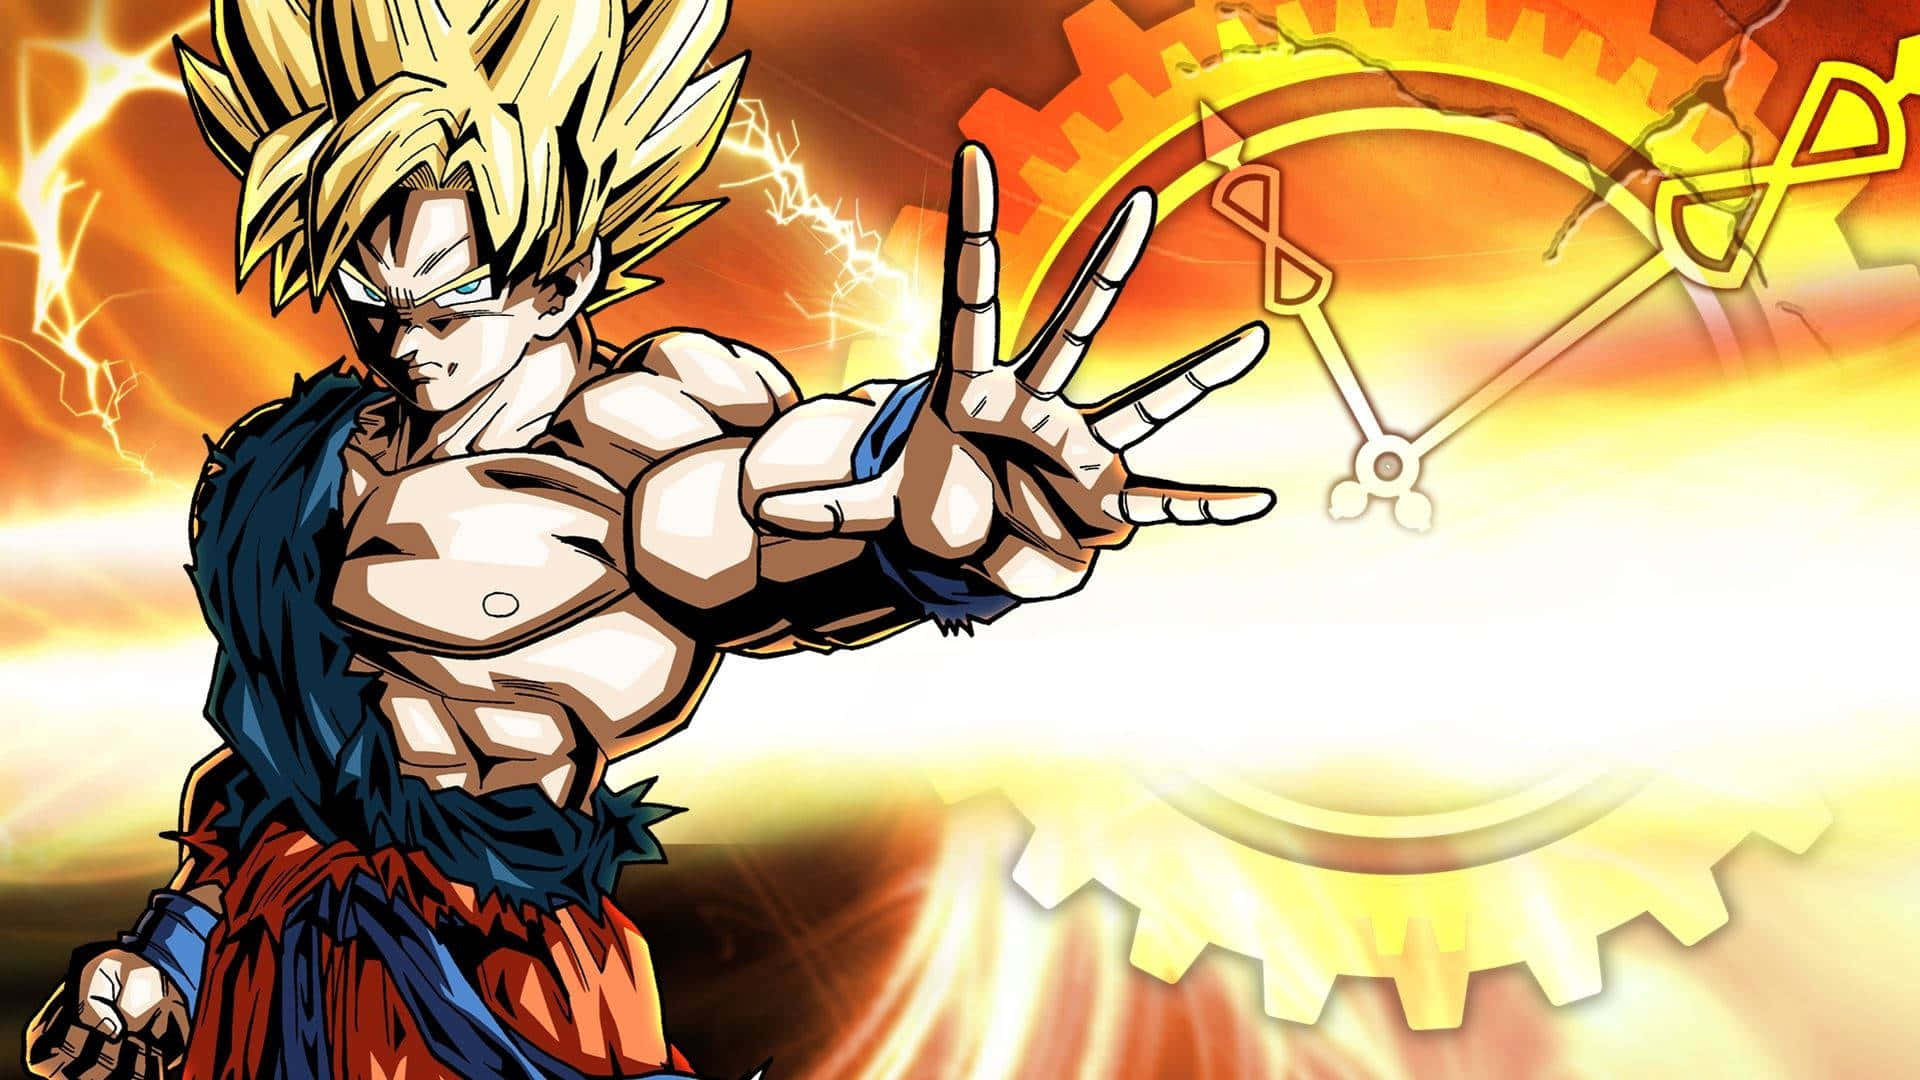 Super Saiyan Goku udviser en kraftig udstilling af energi. Wallpaper